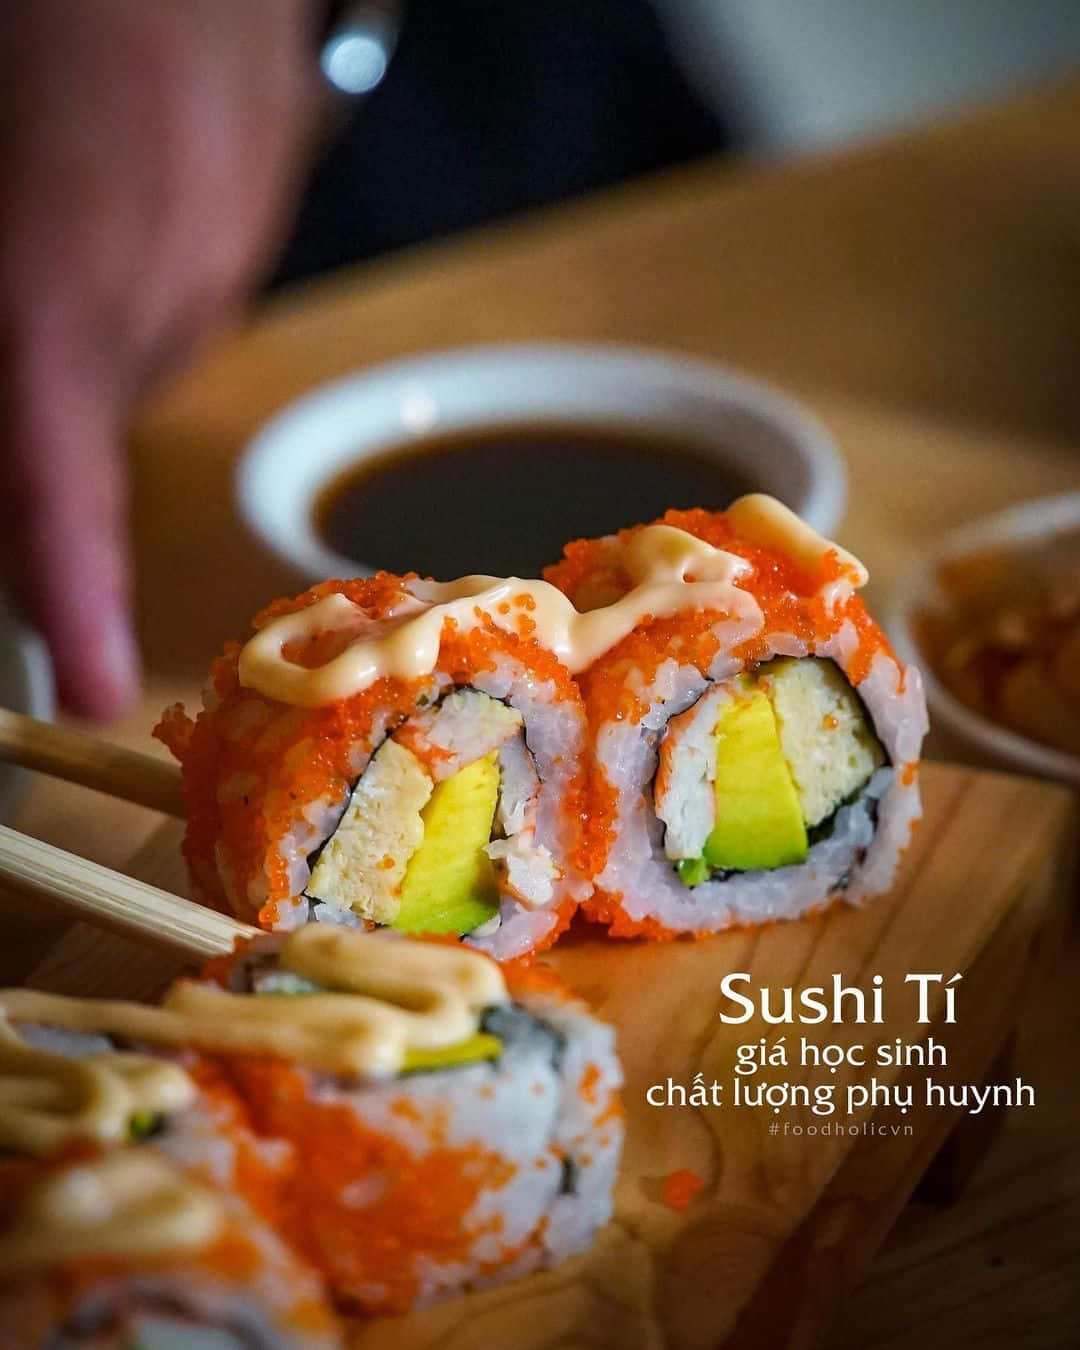 Tphcm] Quán Sushi Giá Học Sinh Chất Lượng Phụ Huynh | Grab Vn